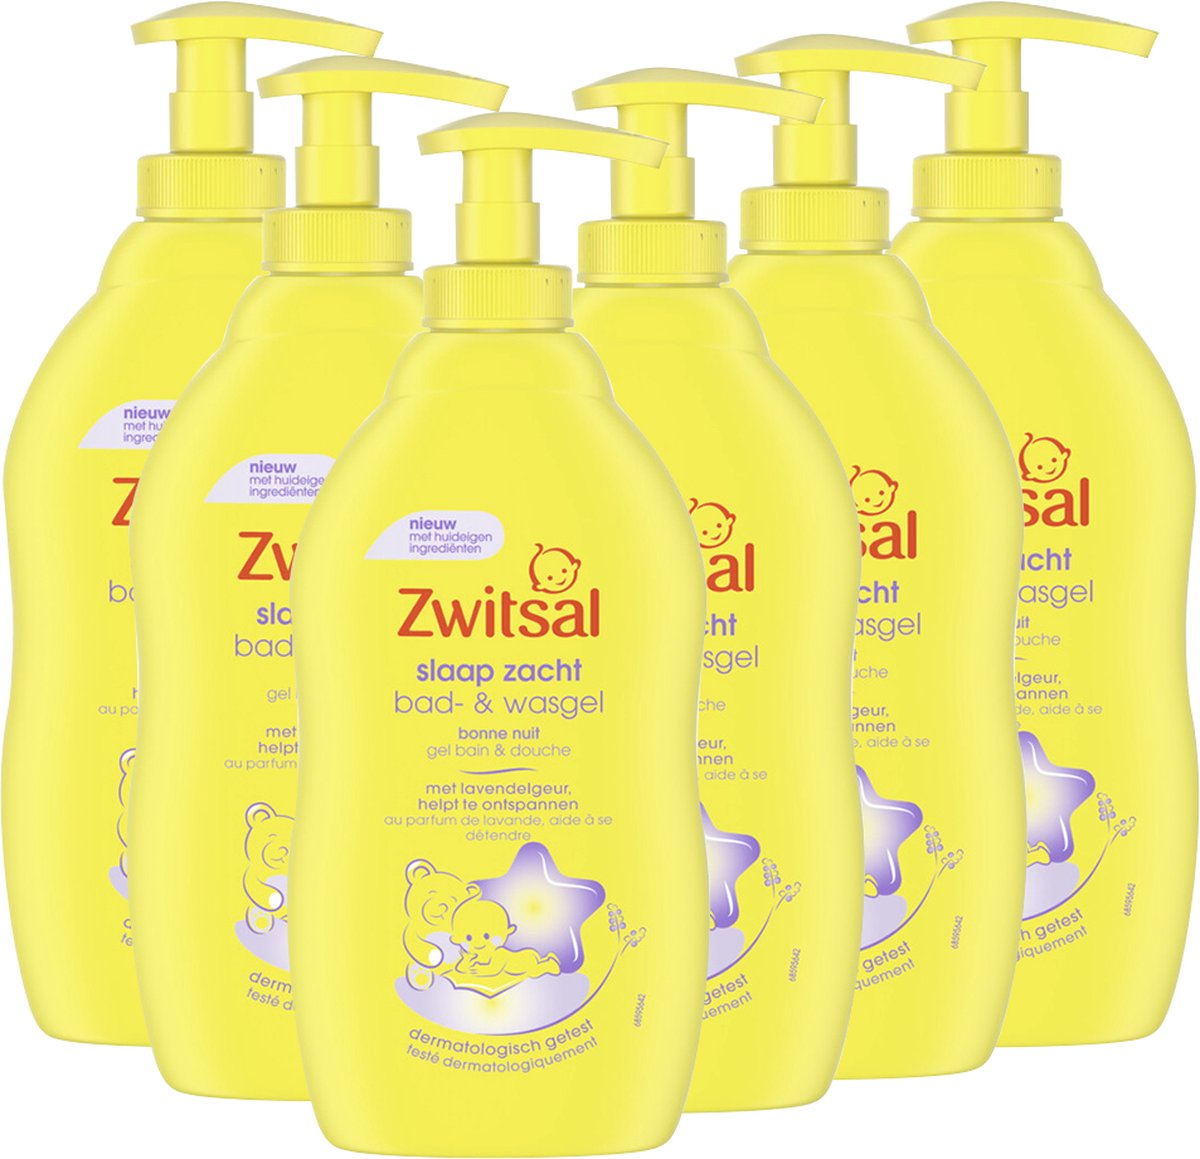 Zwitsal - Slaap Zacht - Bad & Wasgel - Lavendel - 6 x 400ml - Voordeelverpakking